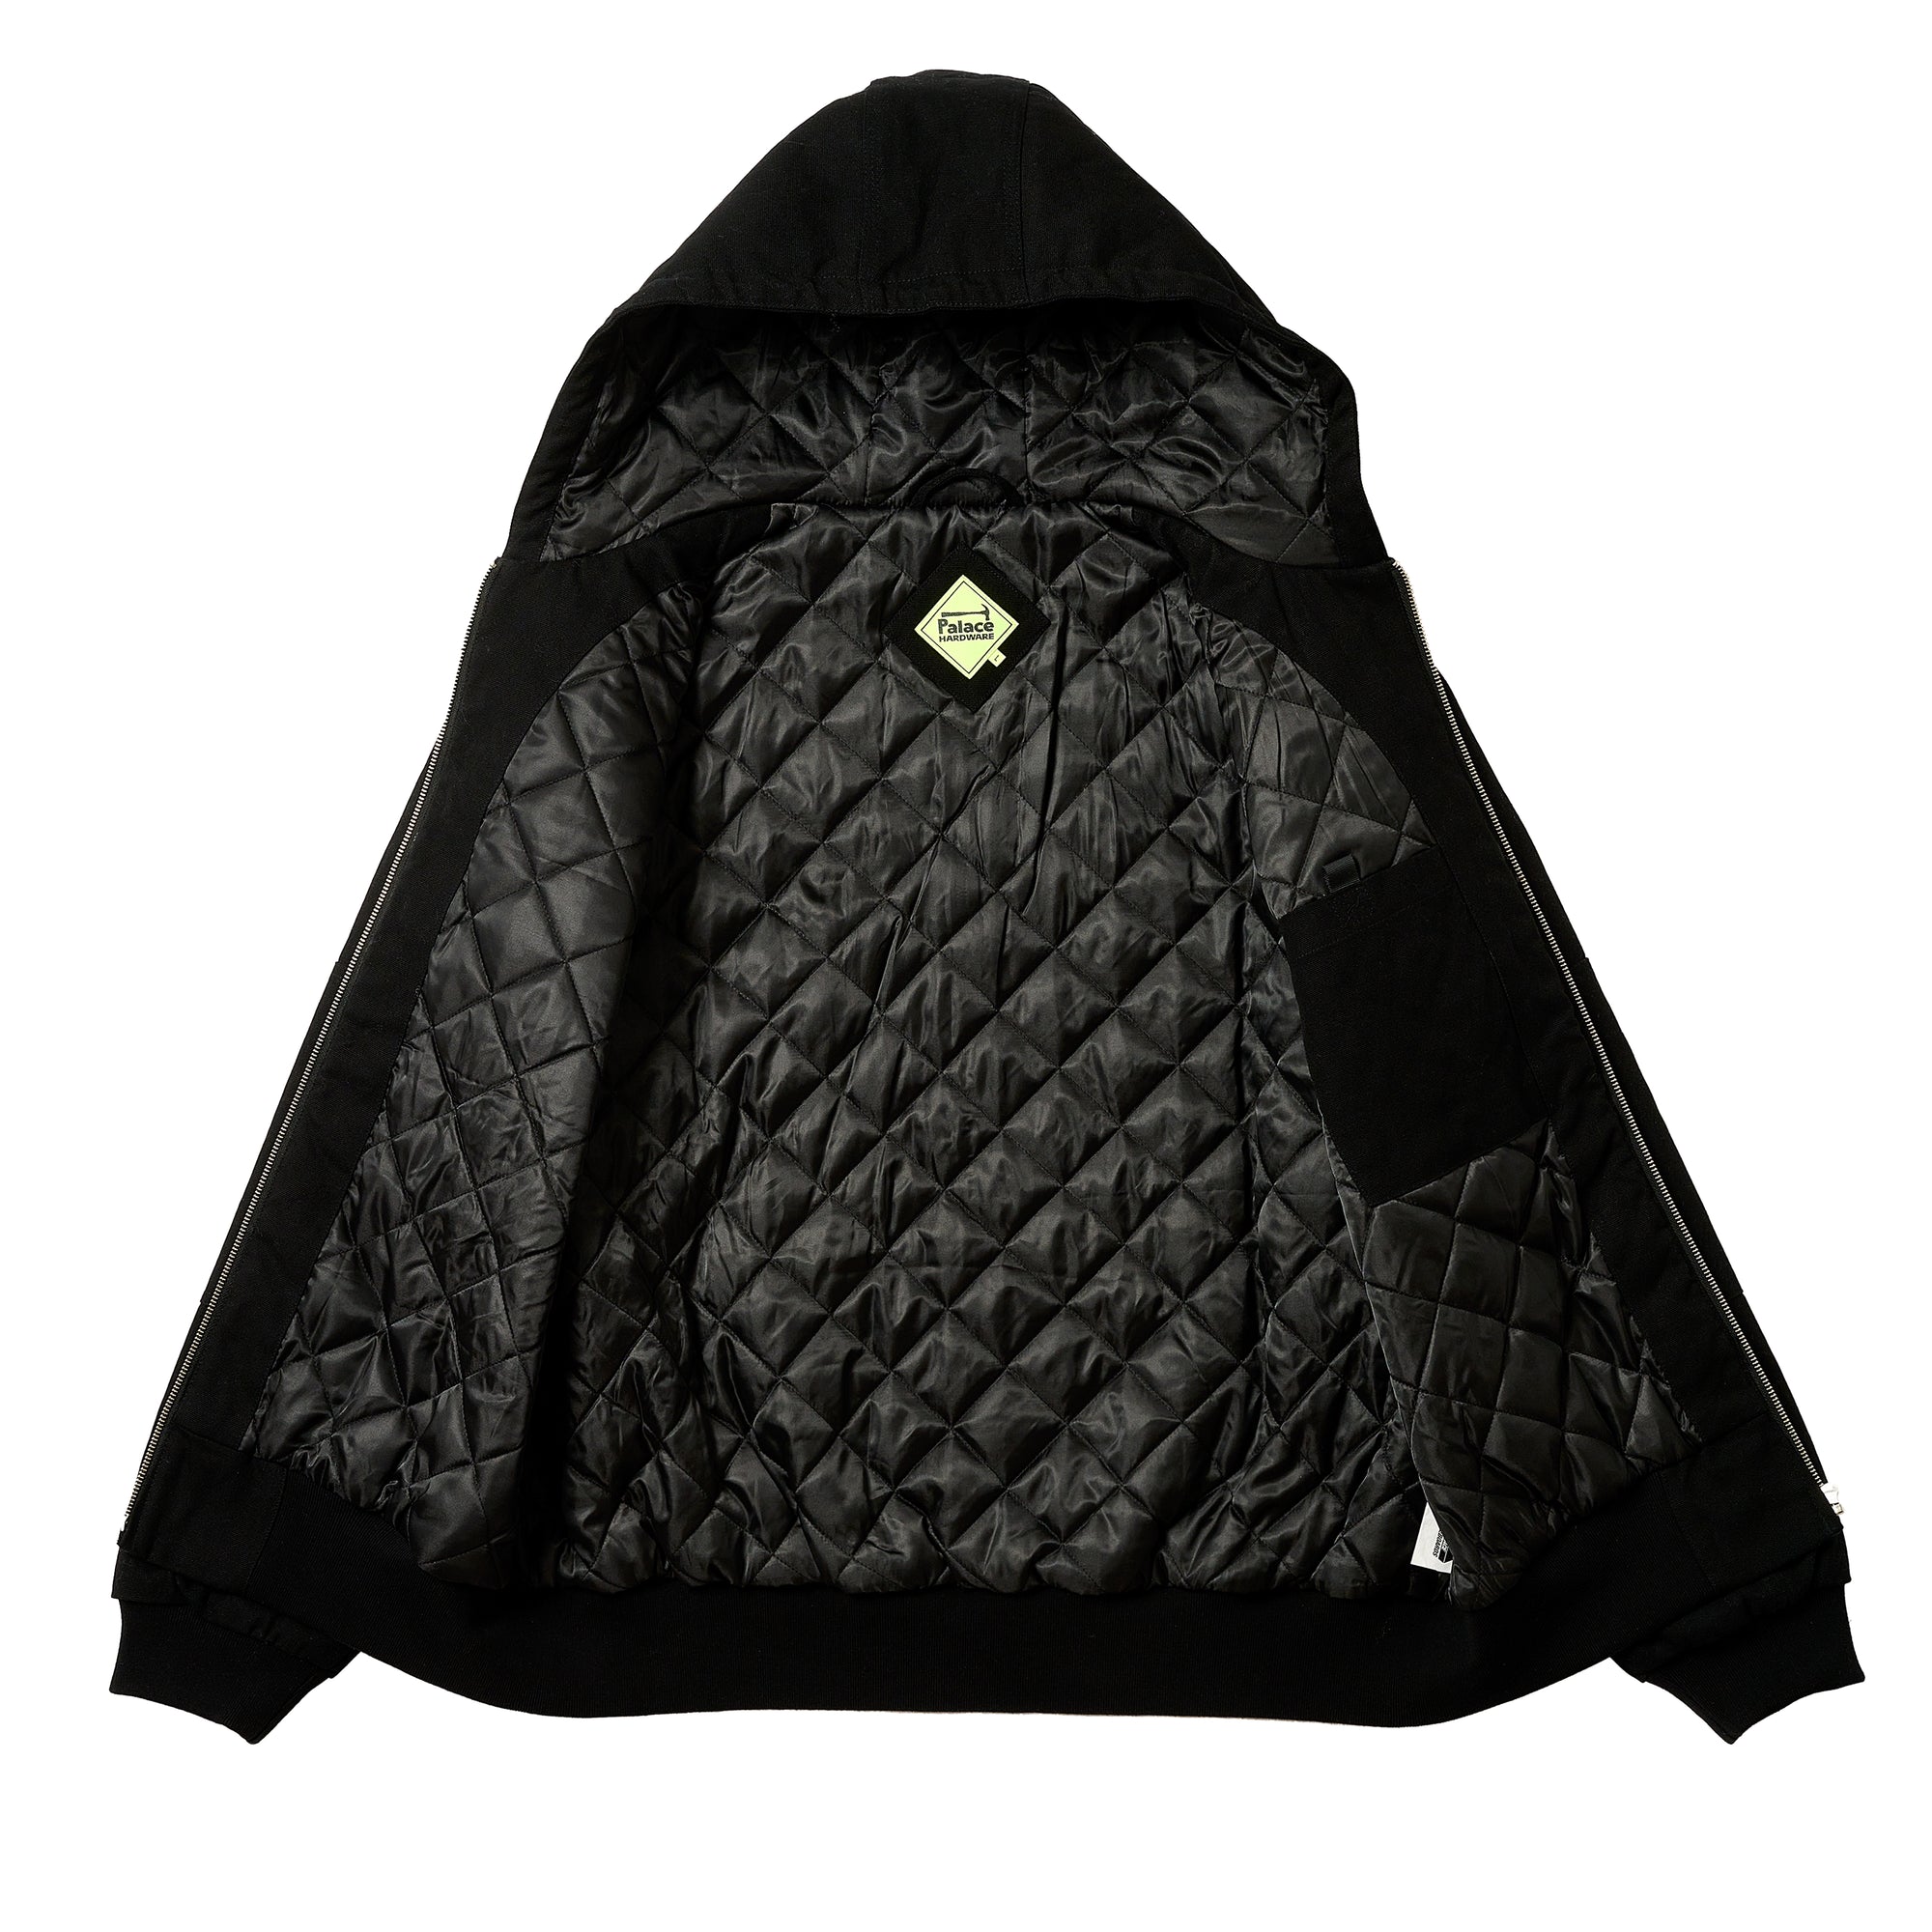 Palace - Palace Hardware Hooded Workwear Jacket - (Black) view 2